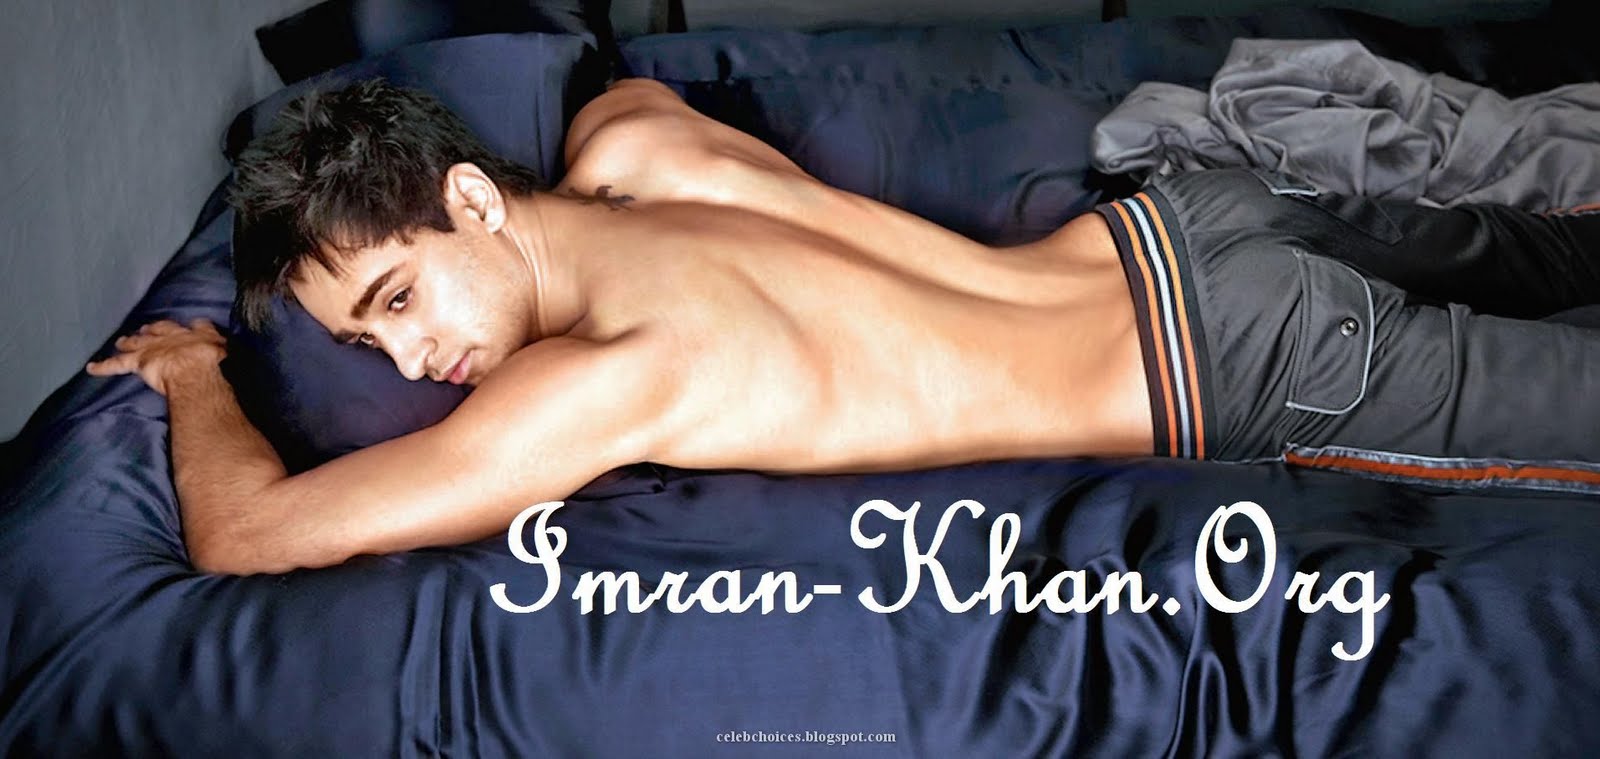 Imran khan sex video